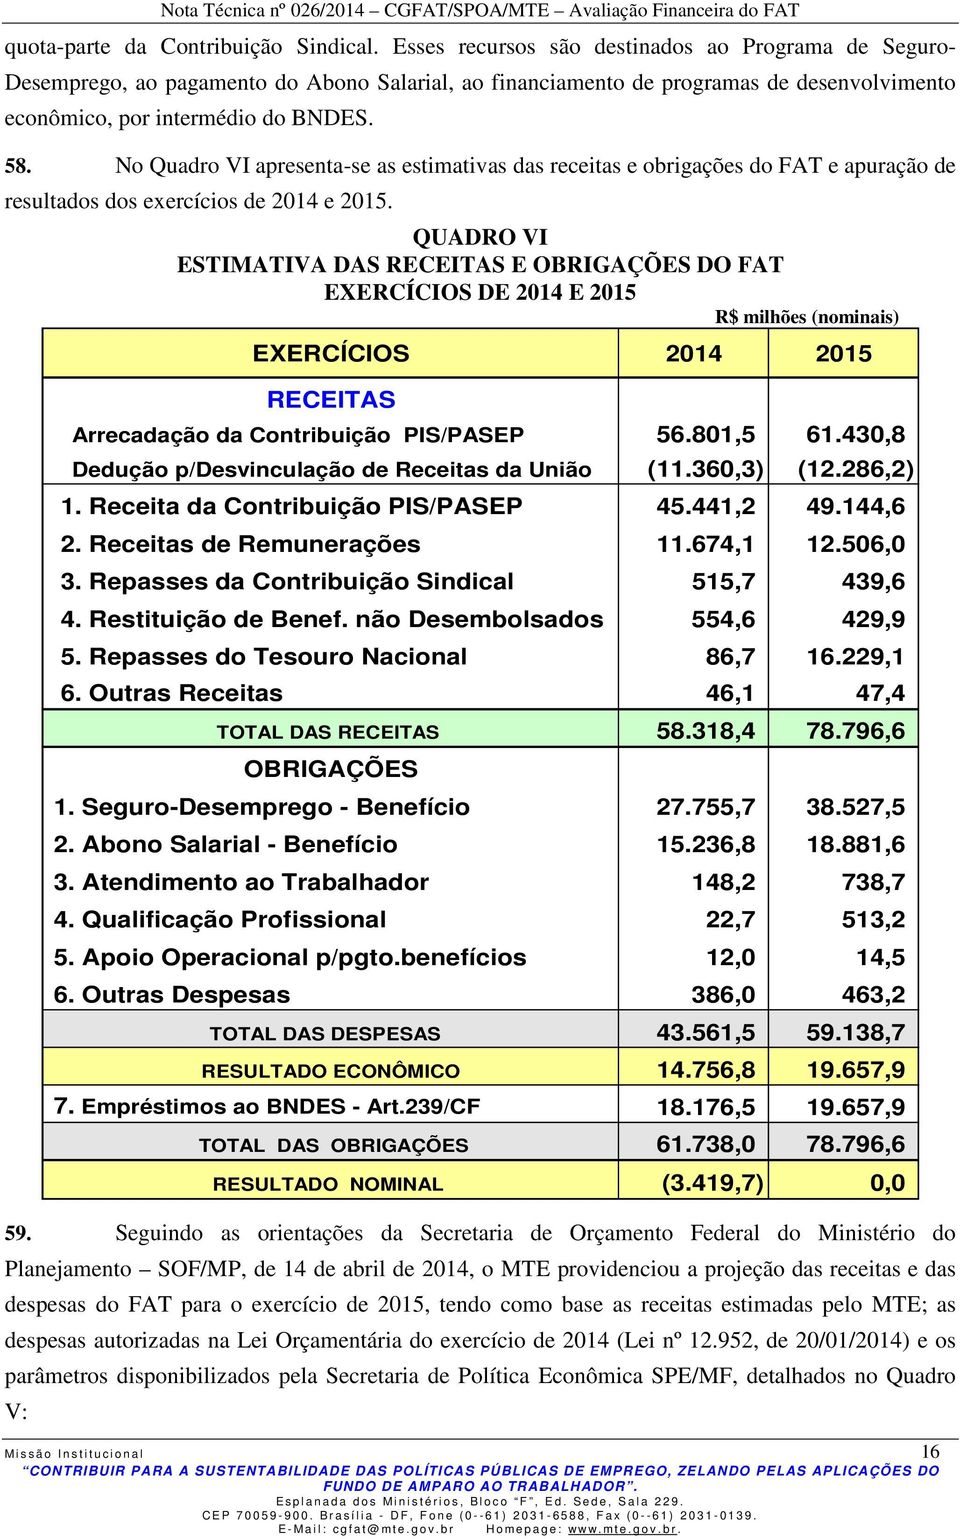 No Quadro VI apresenta-se as estimativas das receitas e obrigações do FAT e apuração de resultados dos exercícios de 2014 e 2015.